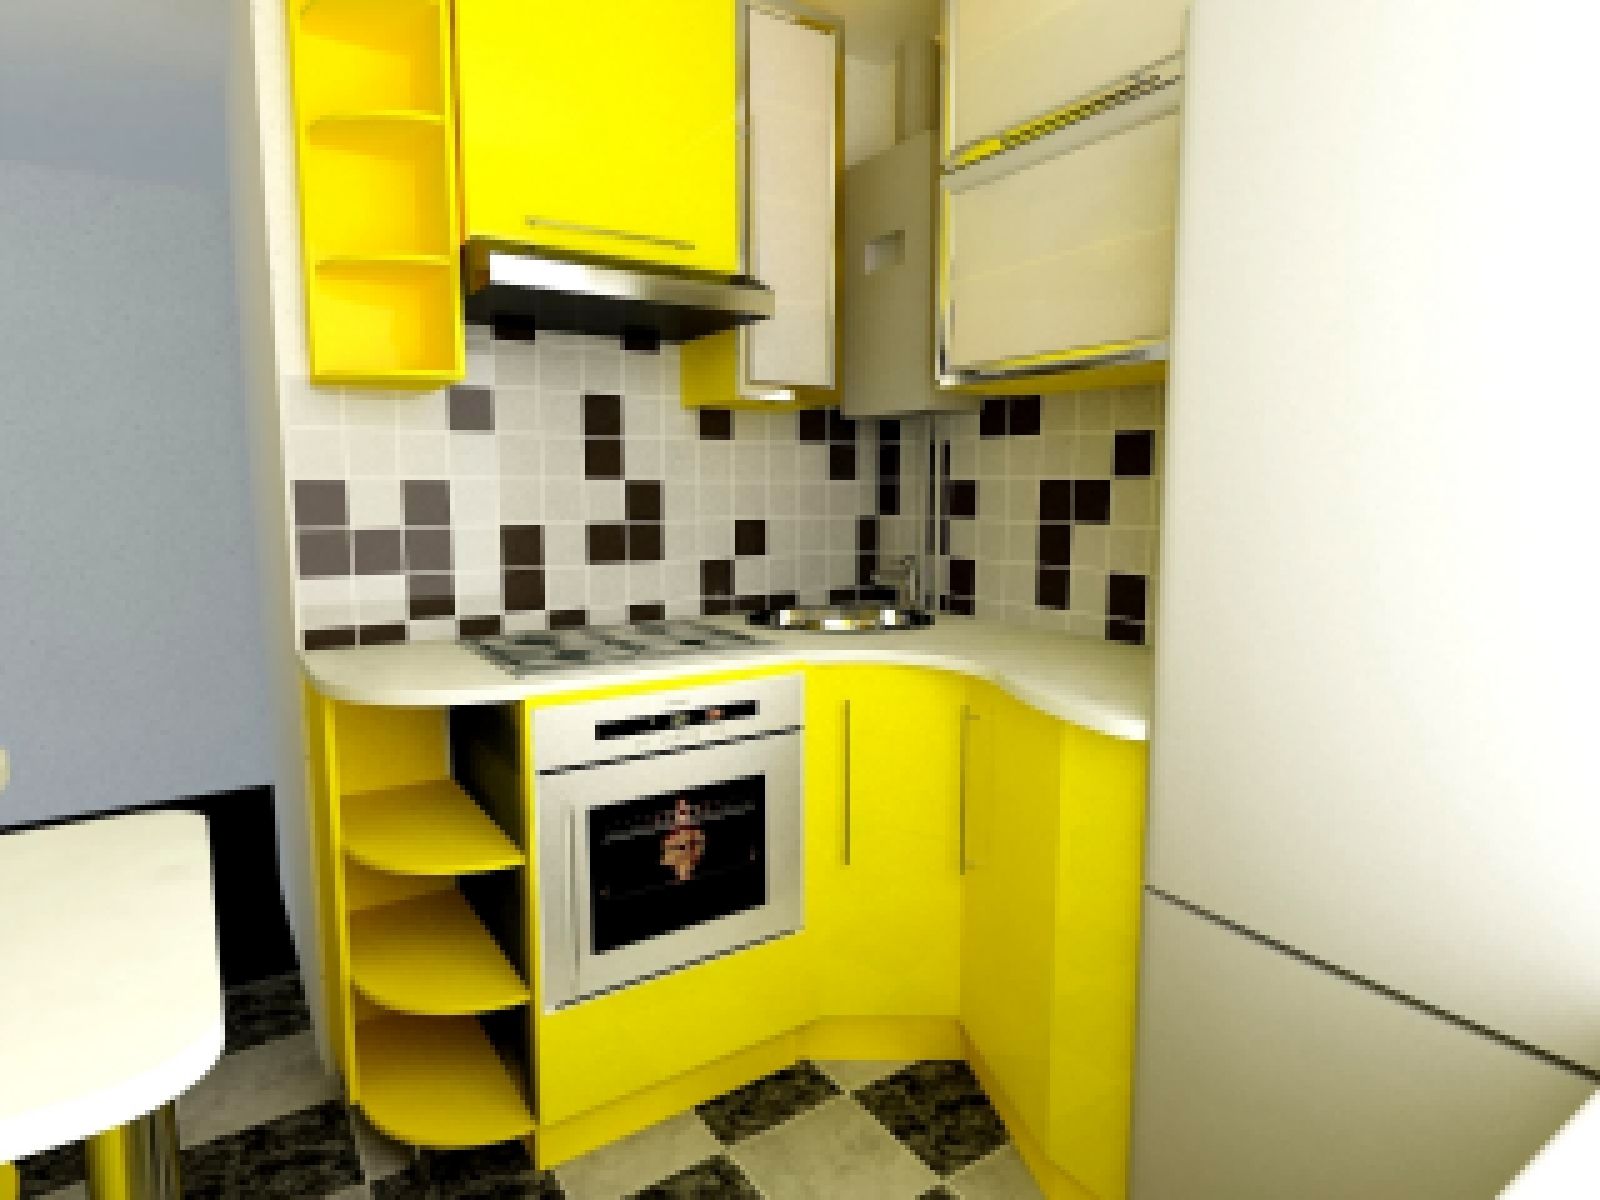  5 метров дизайн: Дизайн кухни 5 кв м: планировка с холодильником .